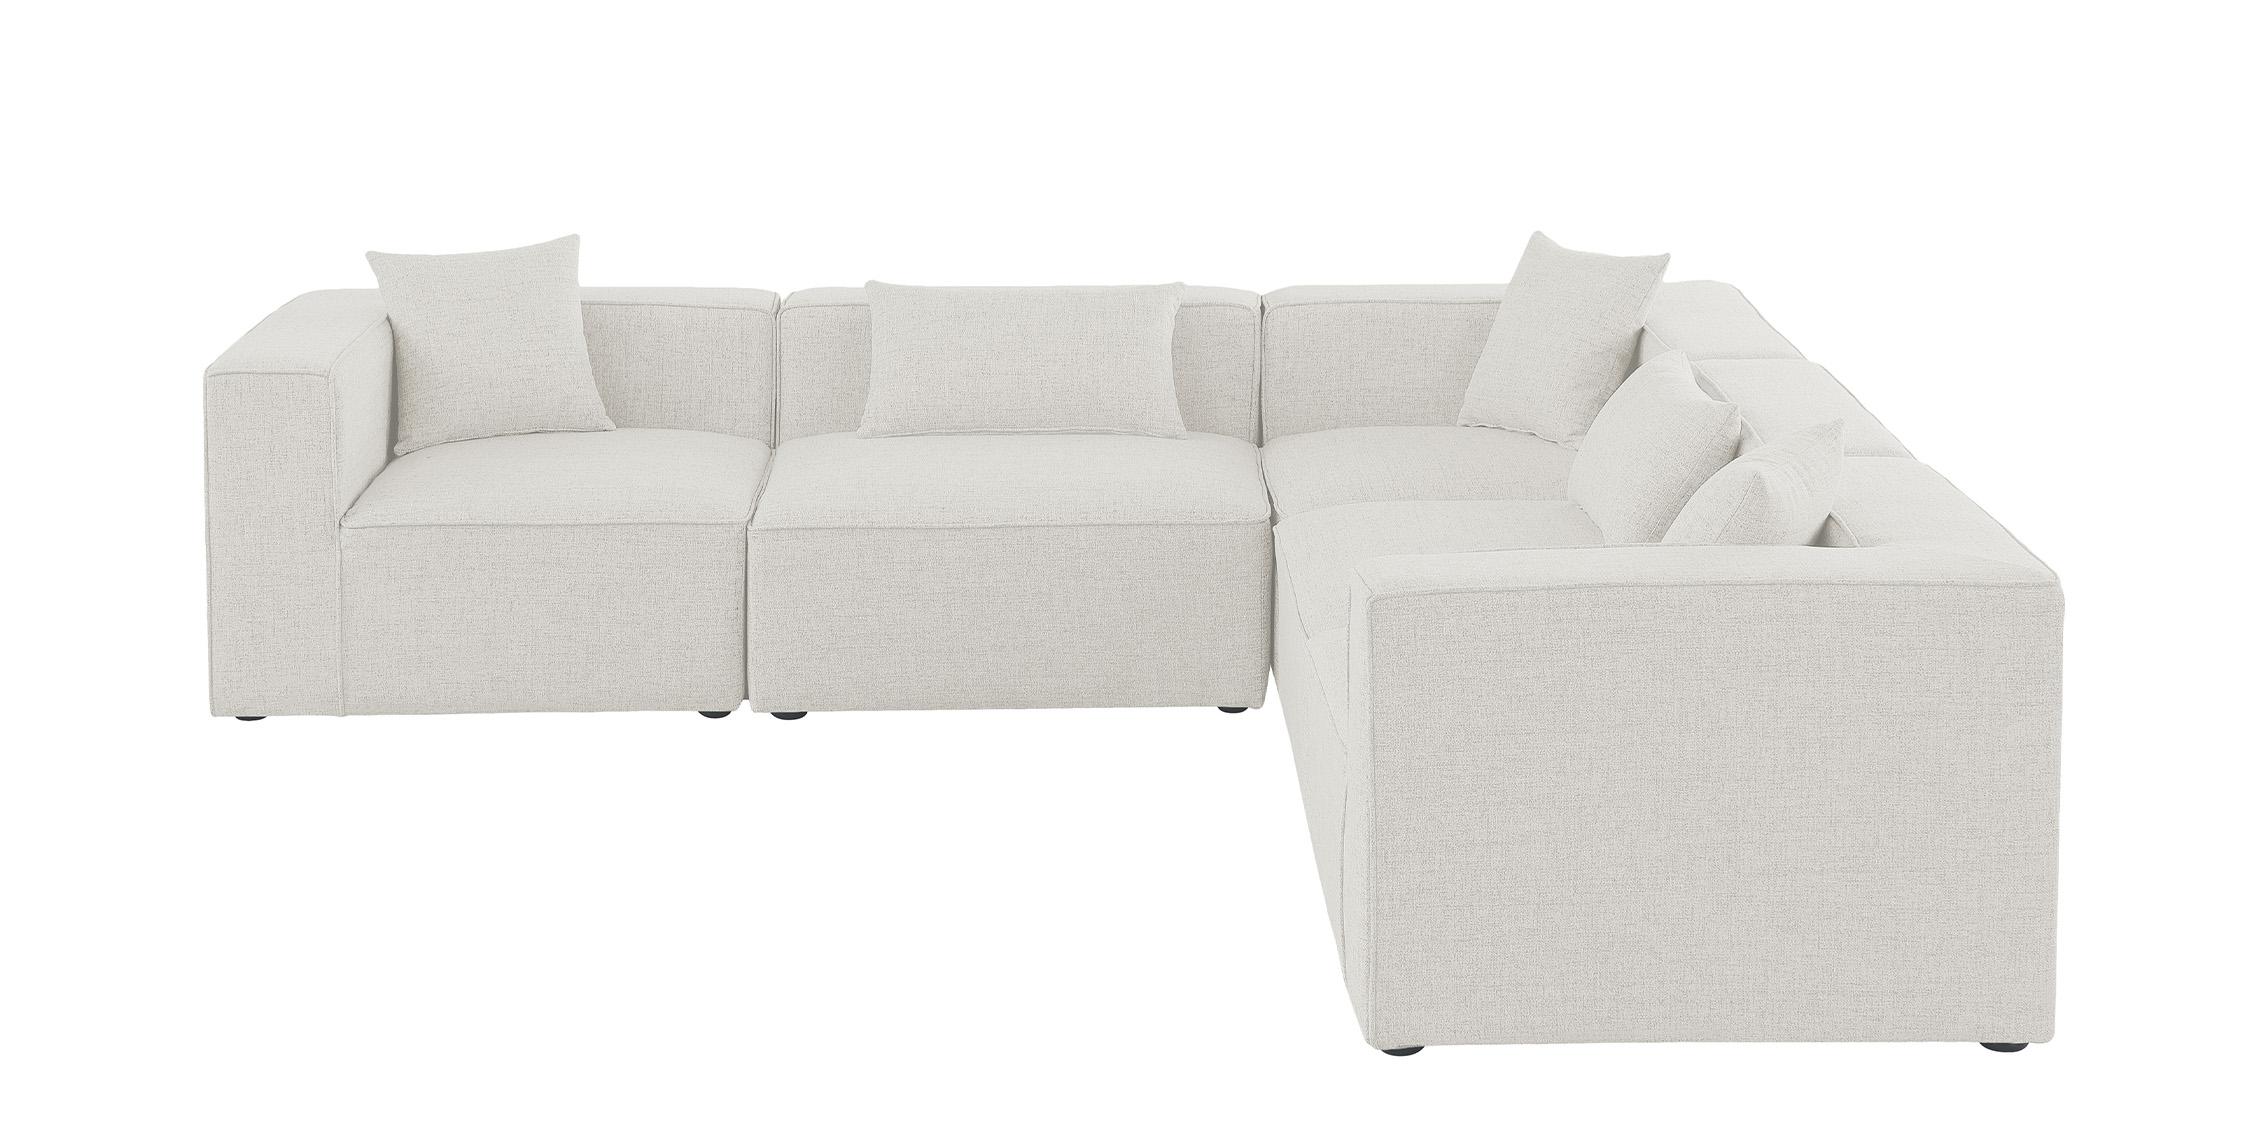 

    
Meridian Furniture CUBE 630Cream-Sec5C Modular Sectional Sofa Cream 630Cream-Sec5C
